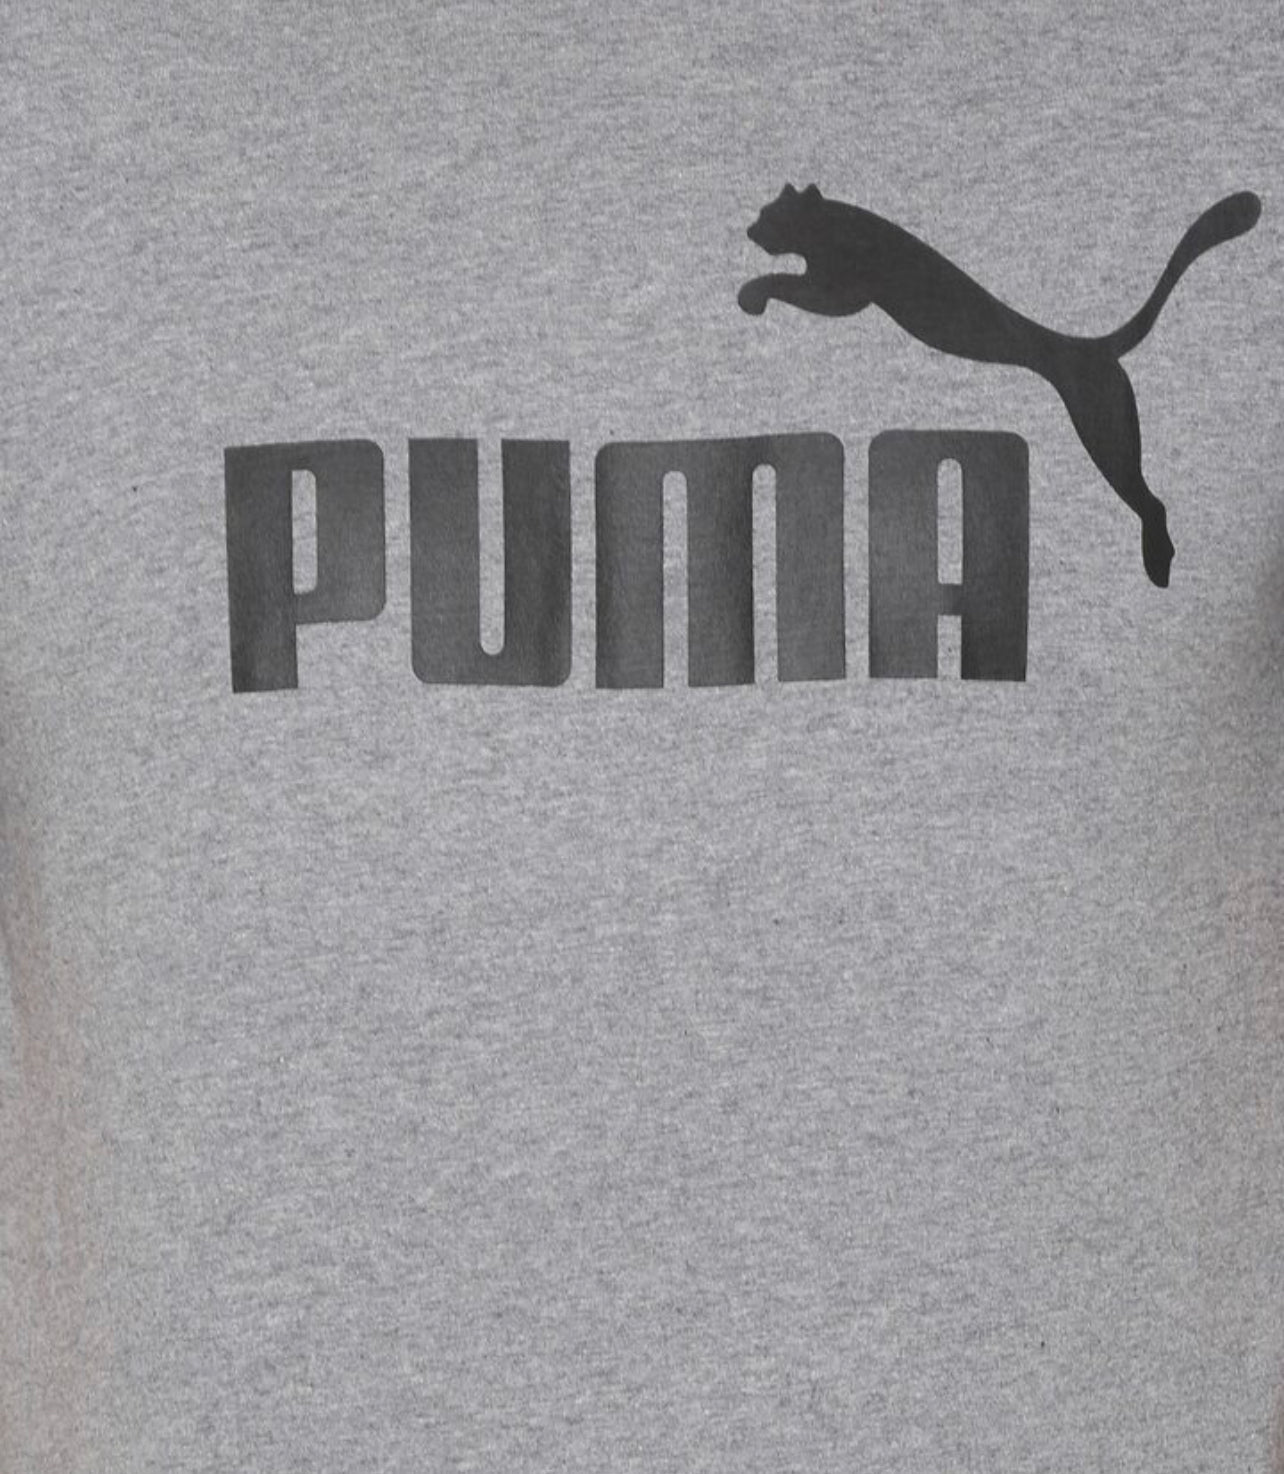 PUMA Original Men T-shirt